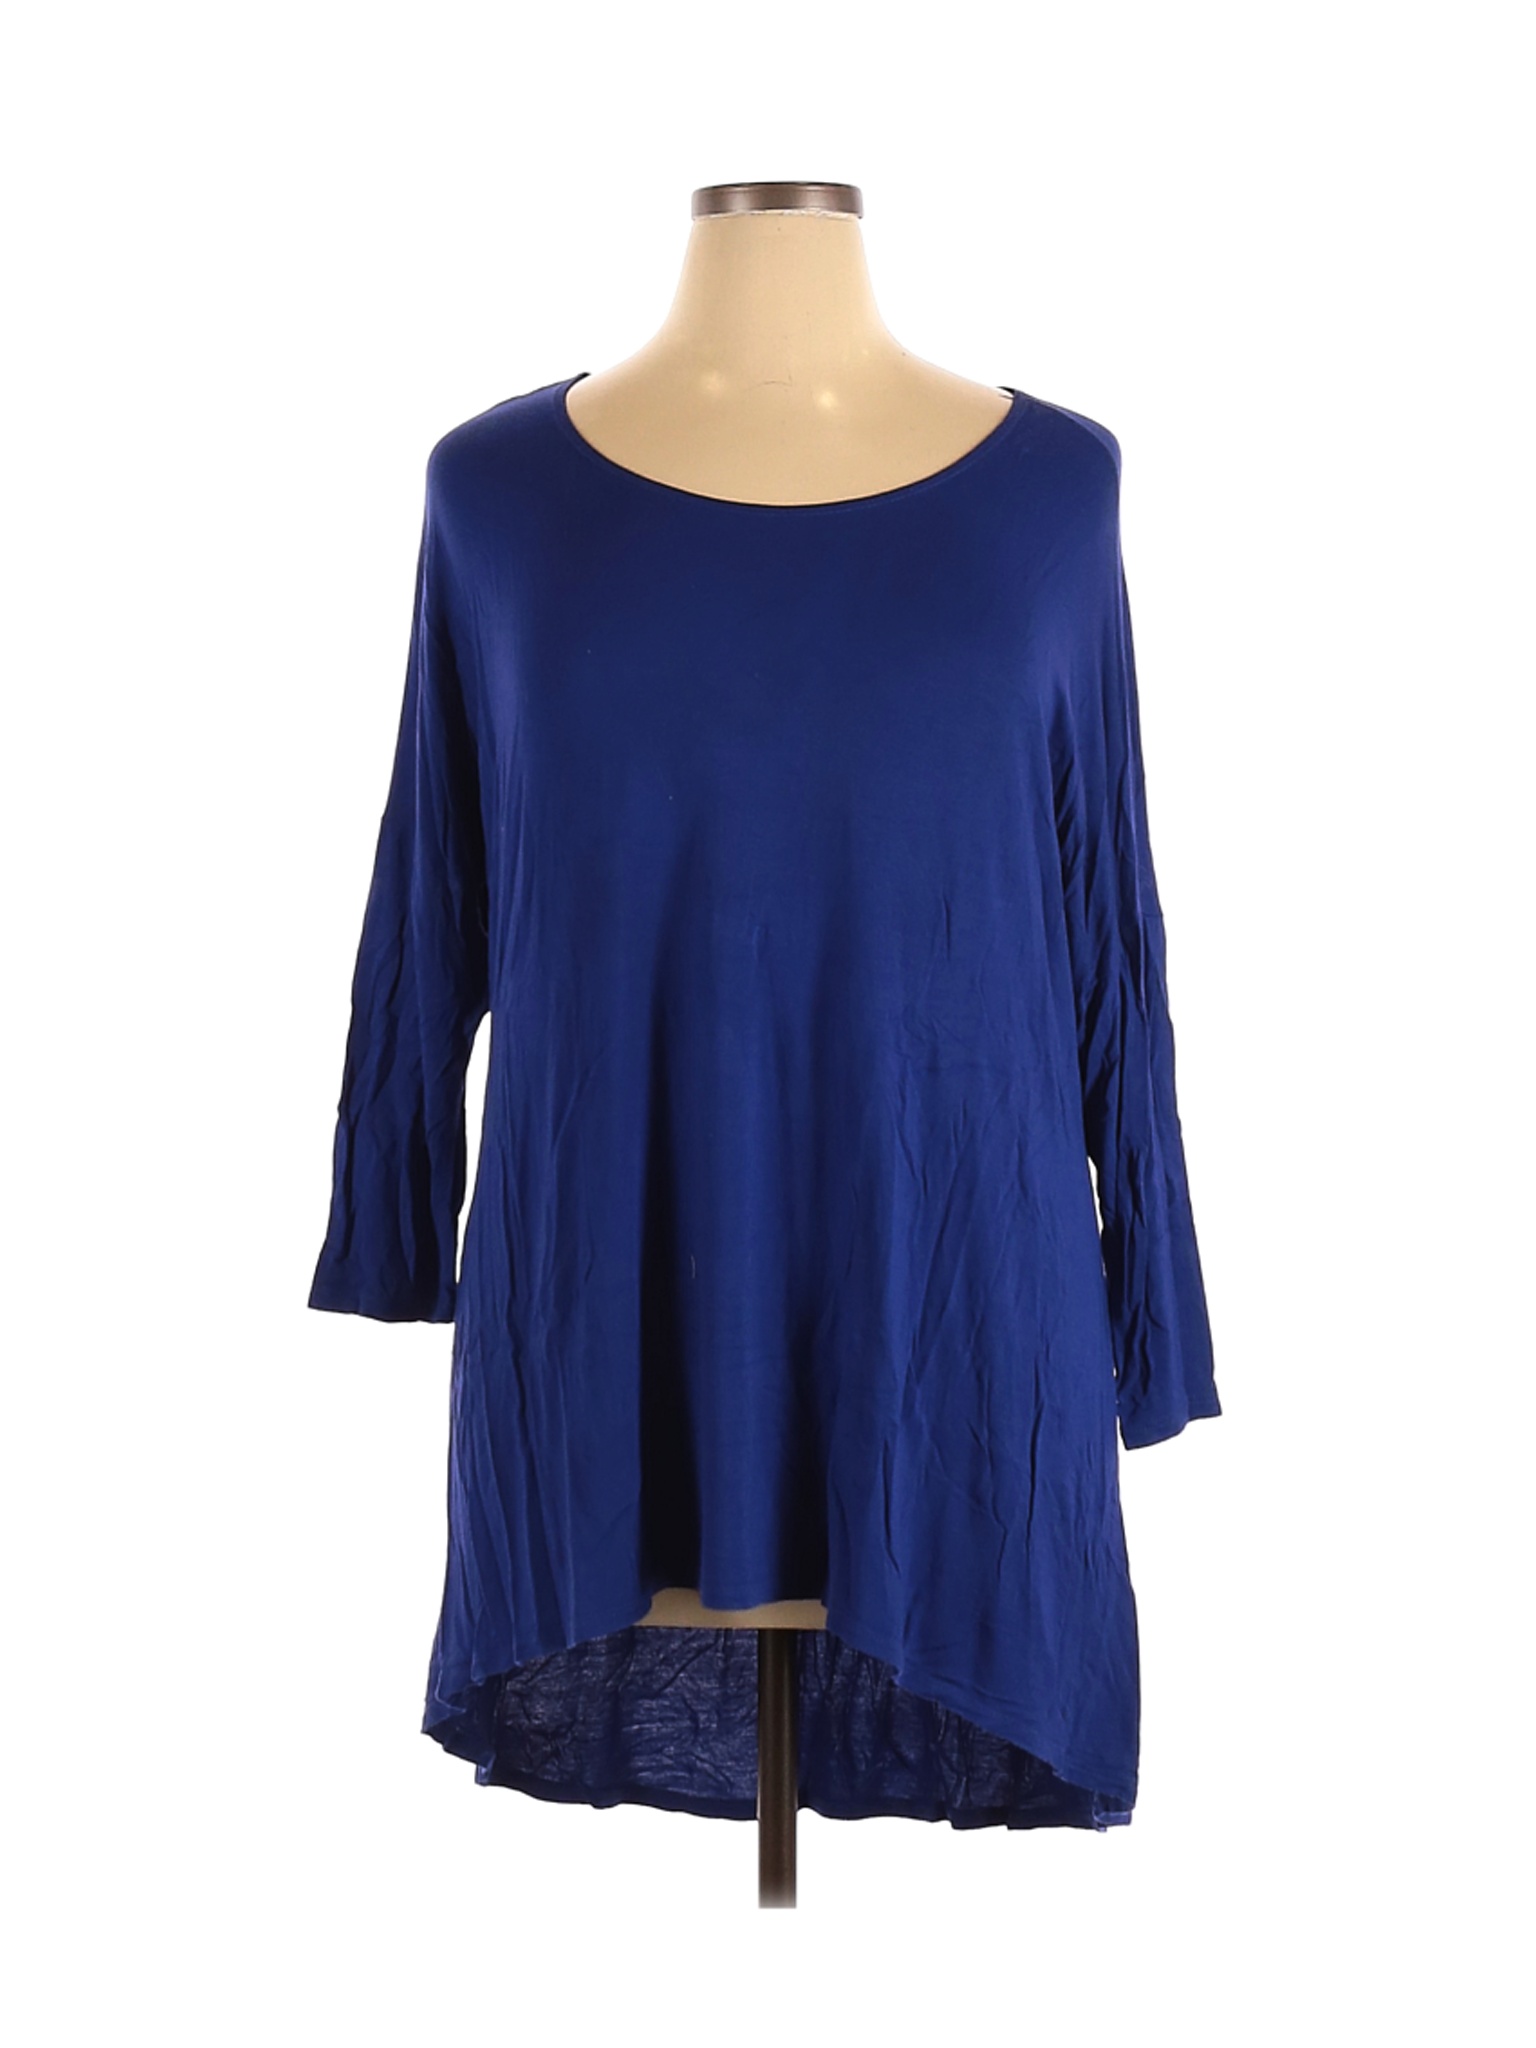 Azules Women Blue Long Sleeve Top XL | eBay